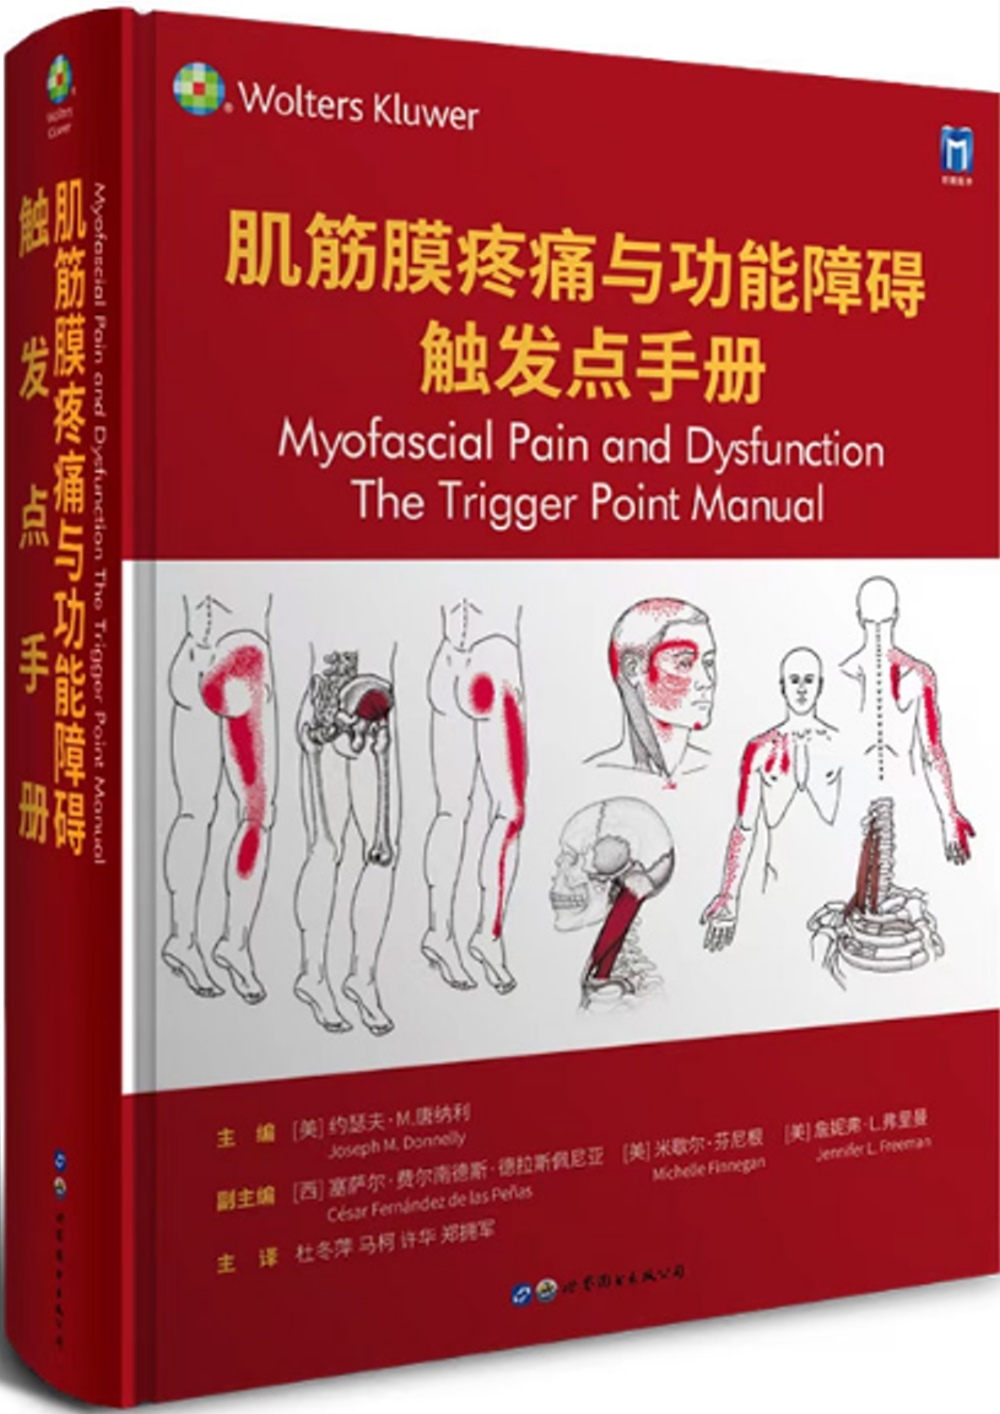 肌筋膜疼痛與功能障礙：觸發點手冊